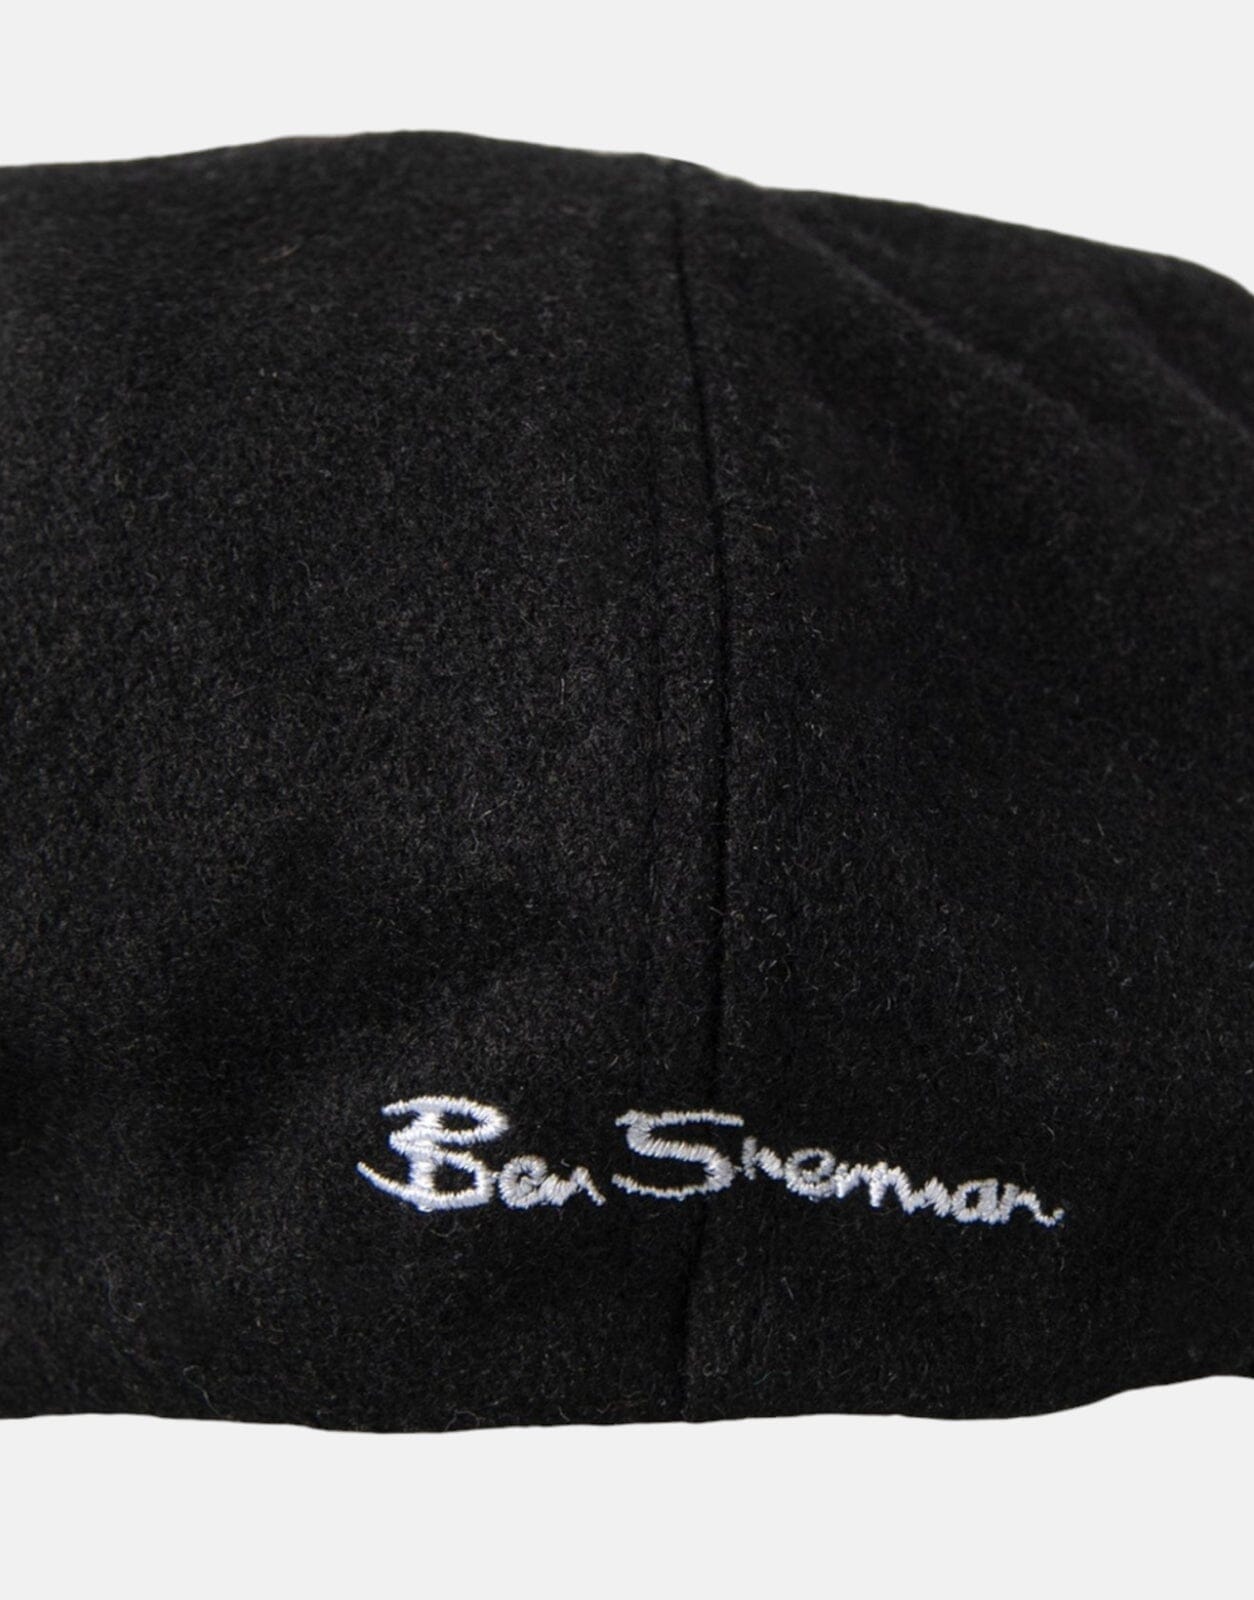 Ben Sherman Ivy Hat Black - Subwear